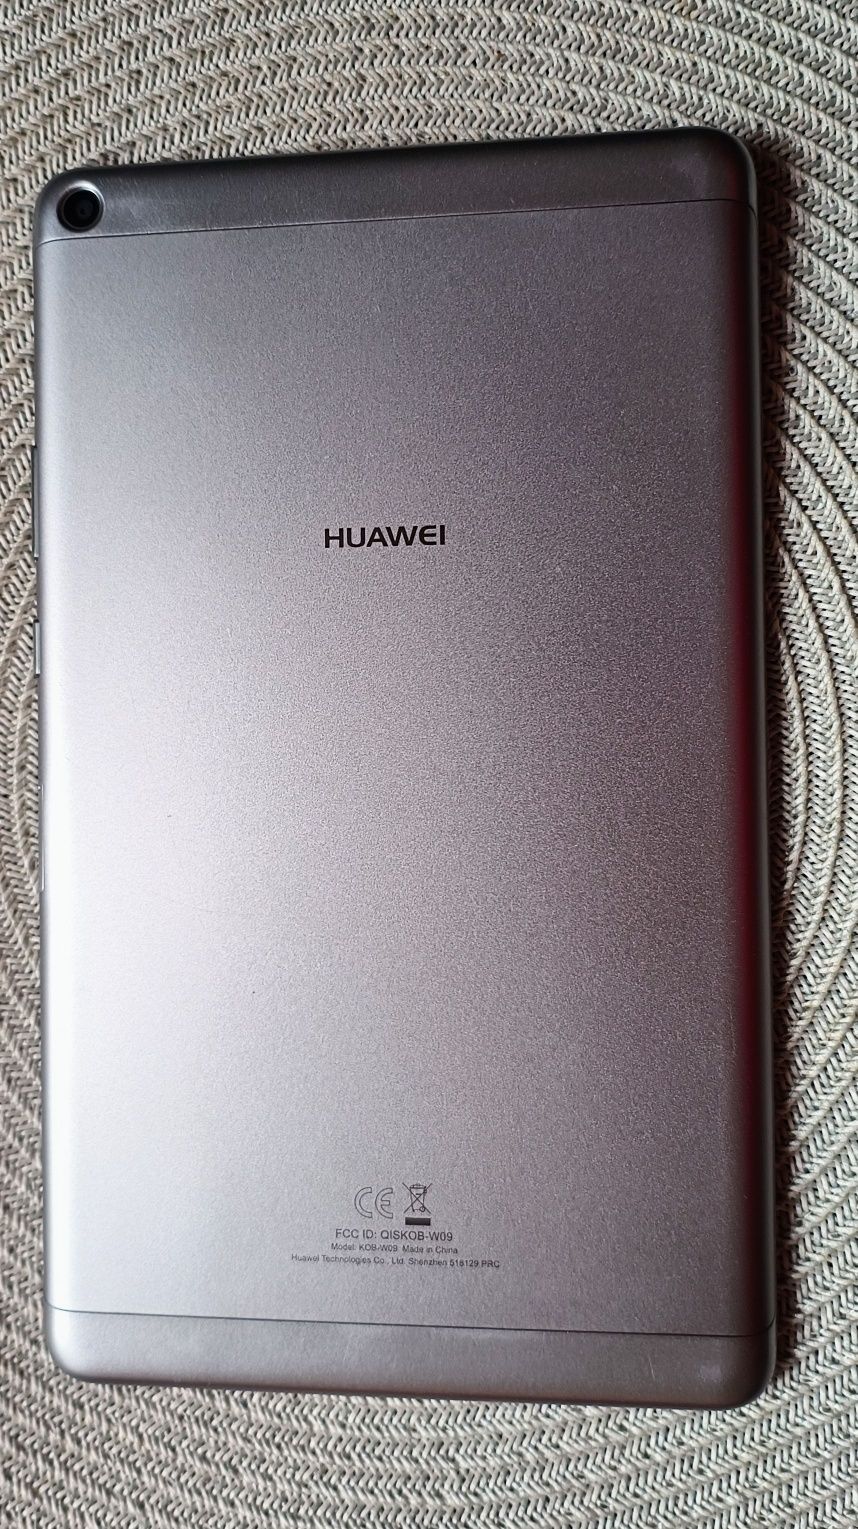 Tablet Huawei MediaPad T3 8 komplet